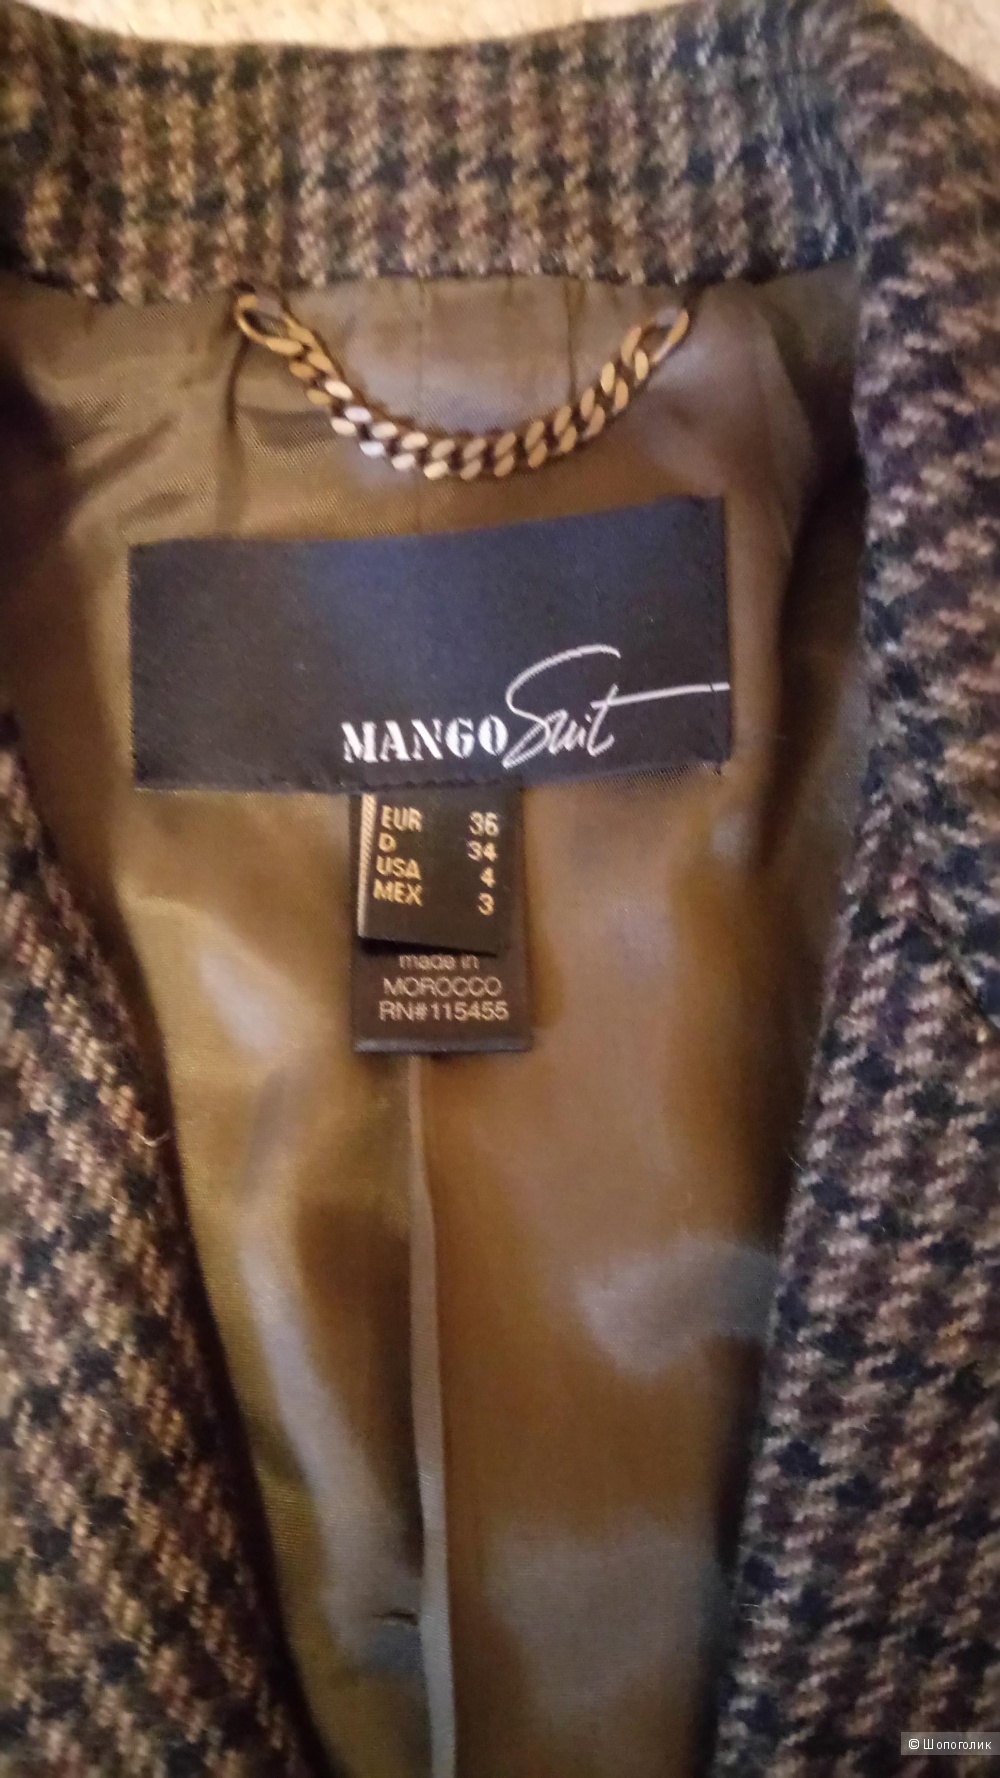 Шерстяной пиджак Mango, размер 36